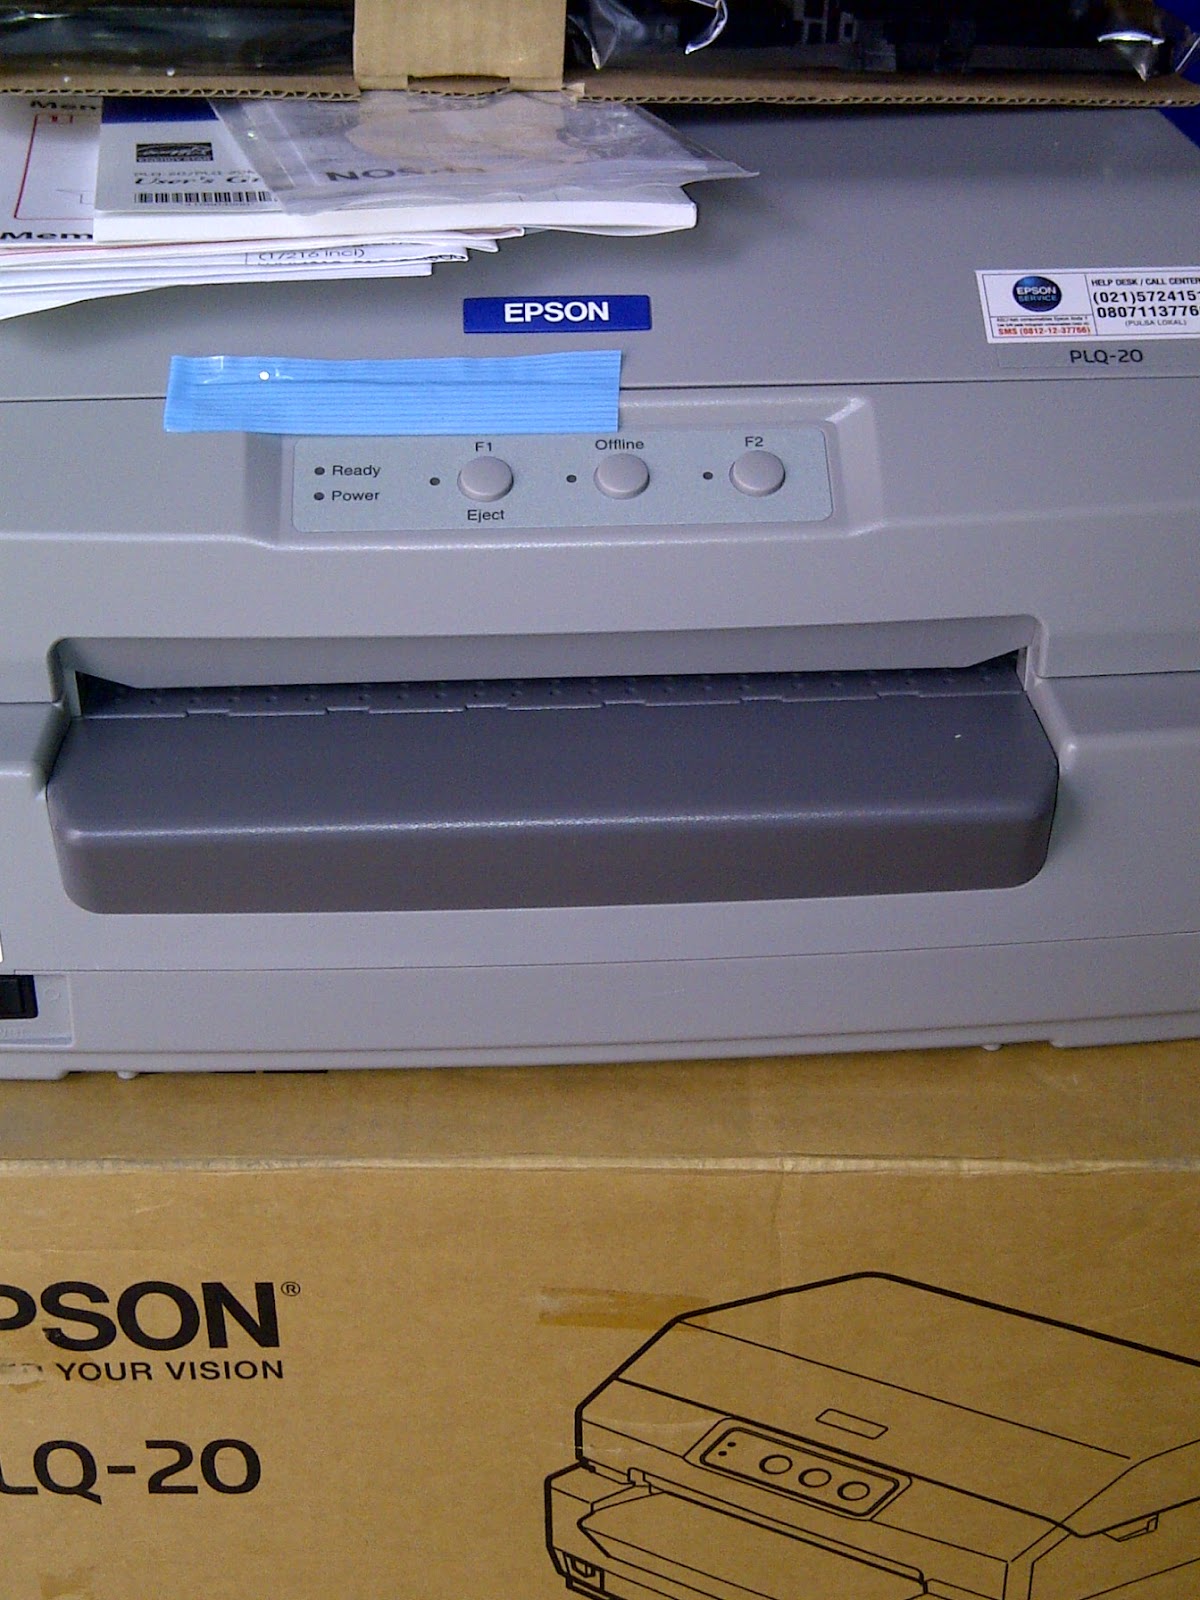 epson plq 20 passbook printer